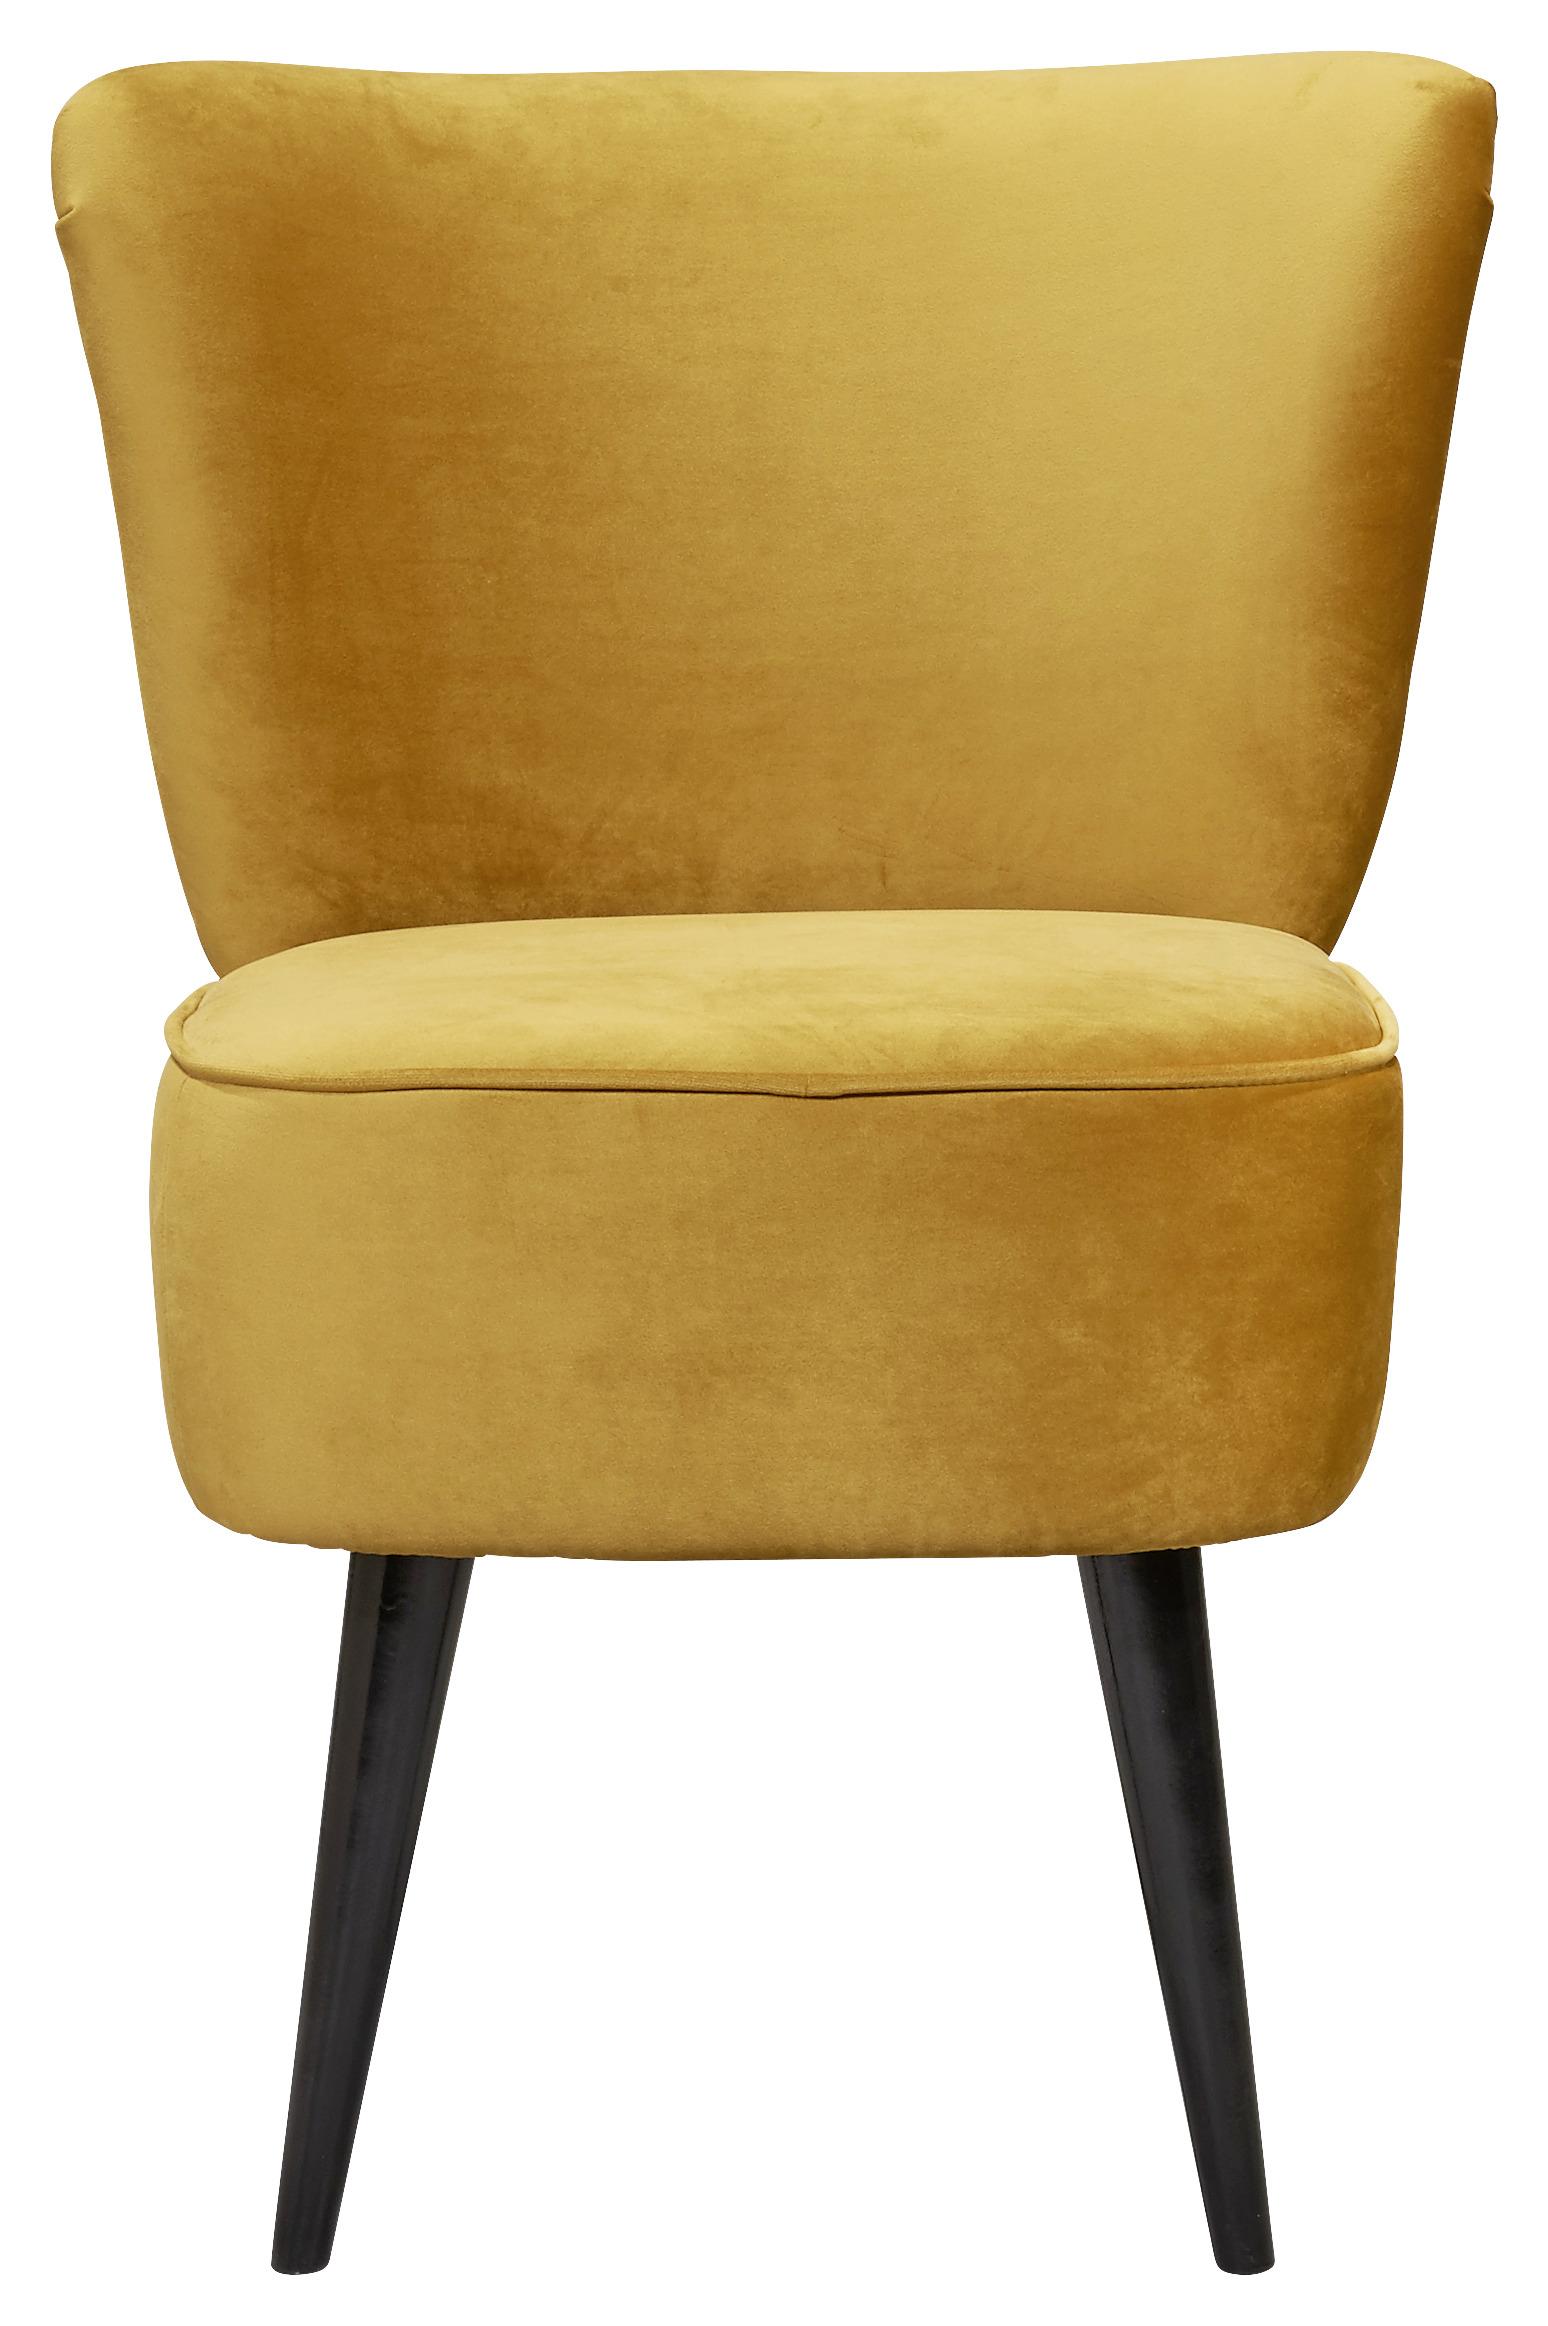 Fotelja Lord -Trend- - zlatne boje/crna, Trend, drvni materijal/tekstil (65/89/70cm) - MID.YOU